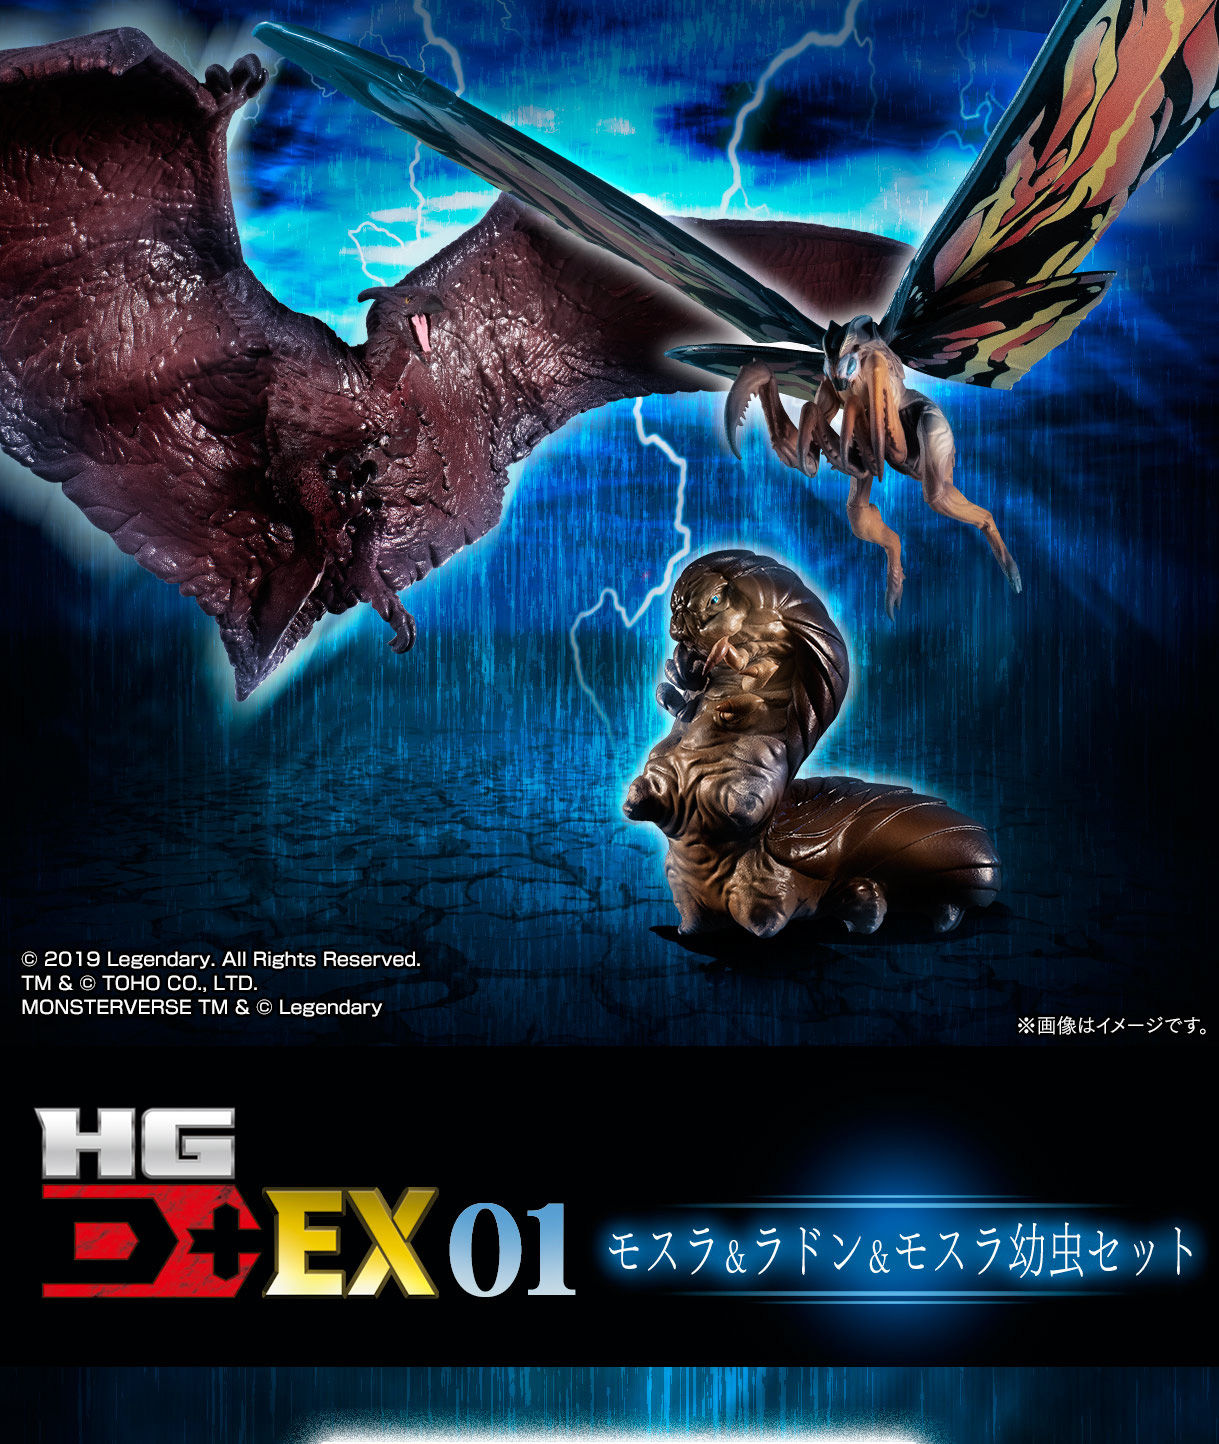 HG D+ EX01 モスラ&ラドン&モスラ幼虫セット culto.pro